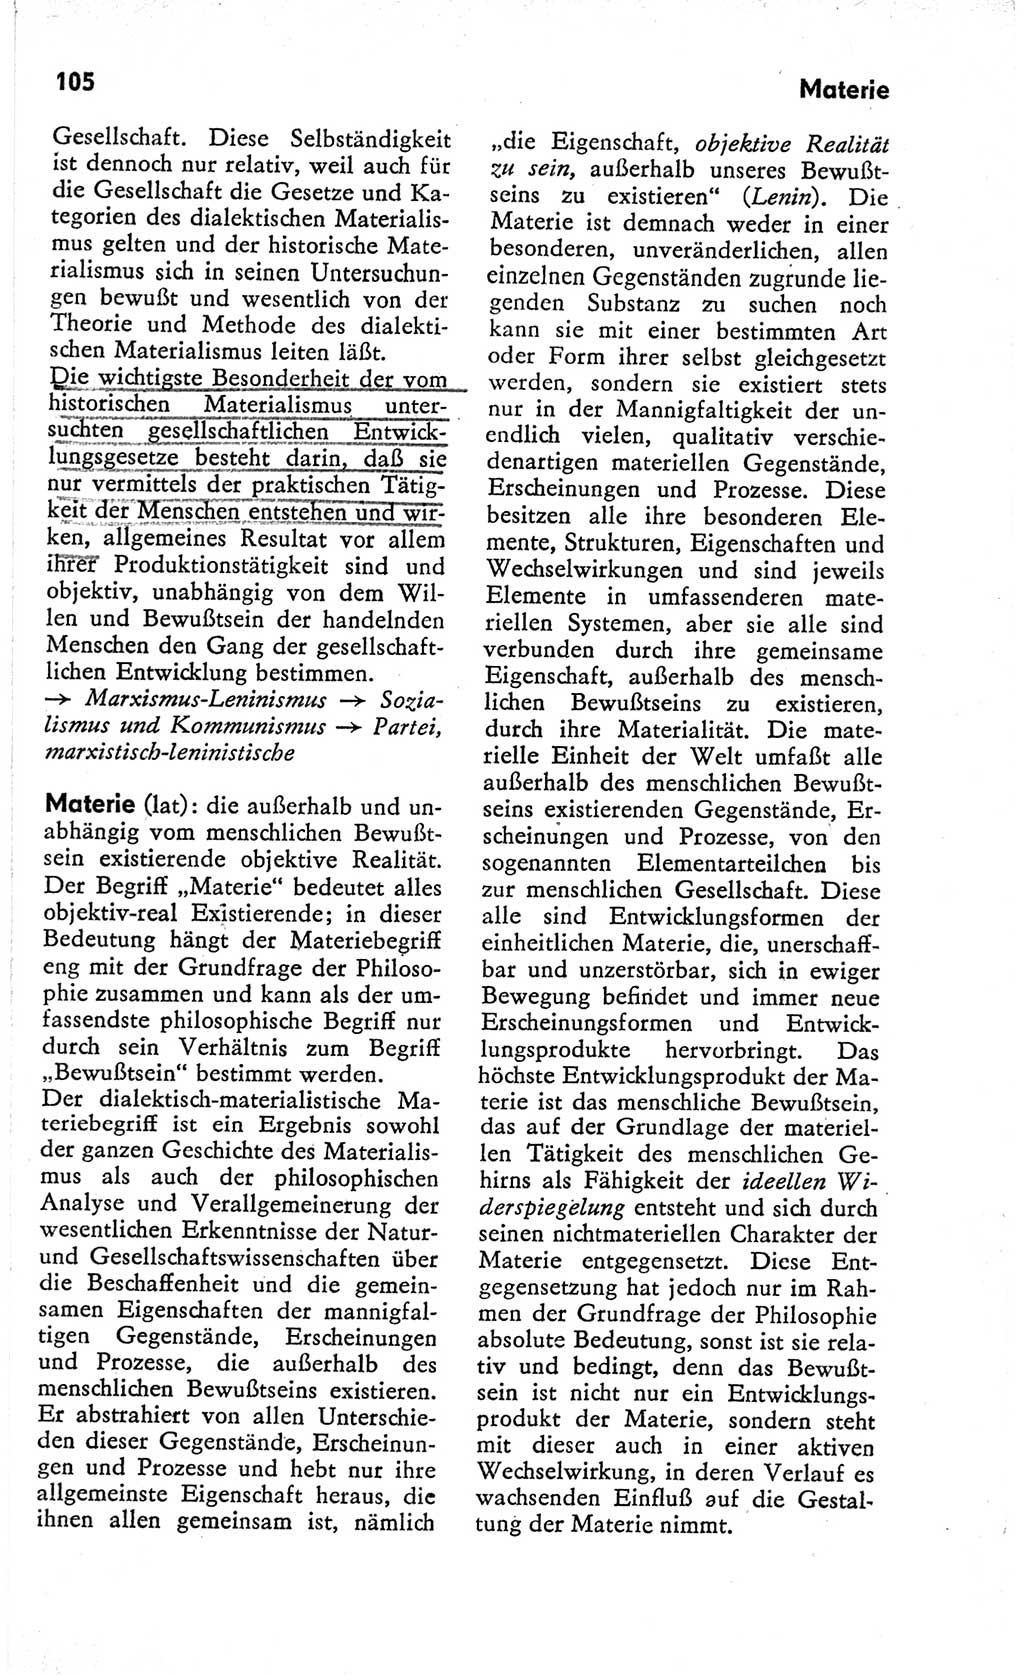 Kleines Wörterbuch der marxistisch-leninistischen Philosophie [Deutsche Demokratische Republik (DDR)] 1966, Seite 105 (Kl. Wb. ML Phil. DDR 1966, S. 105)